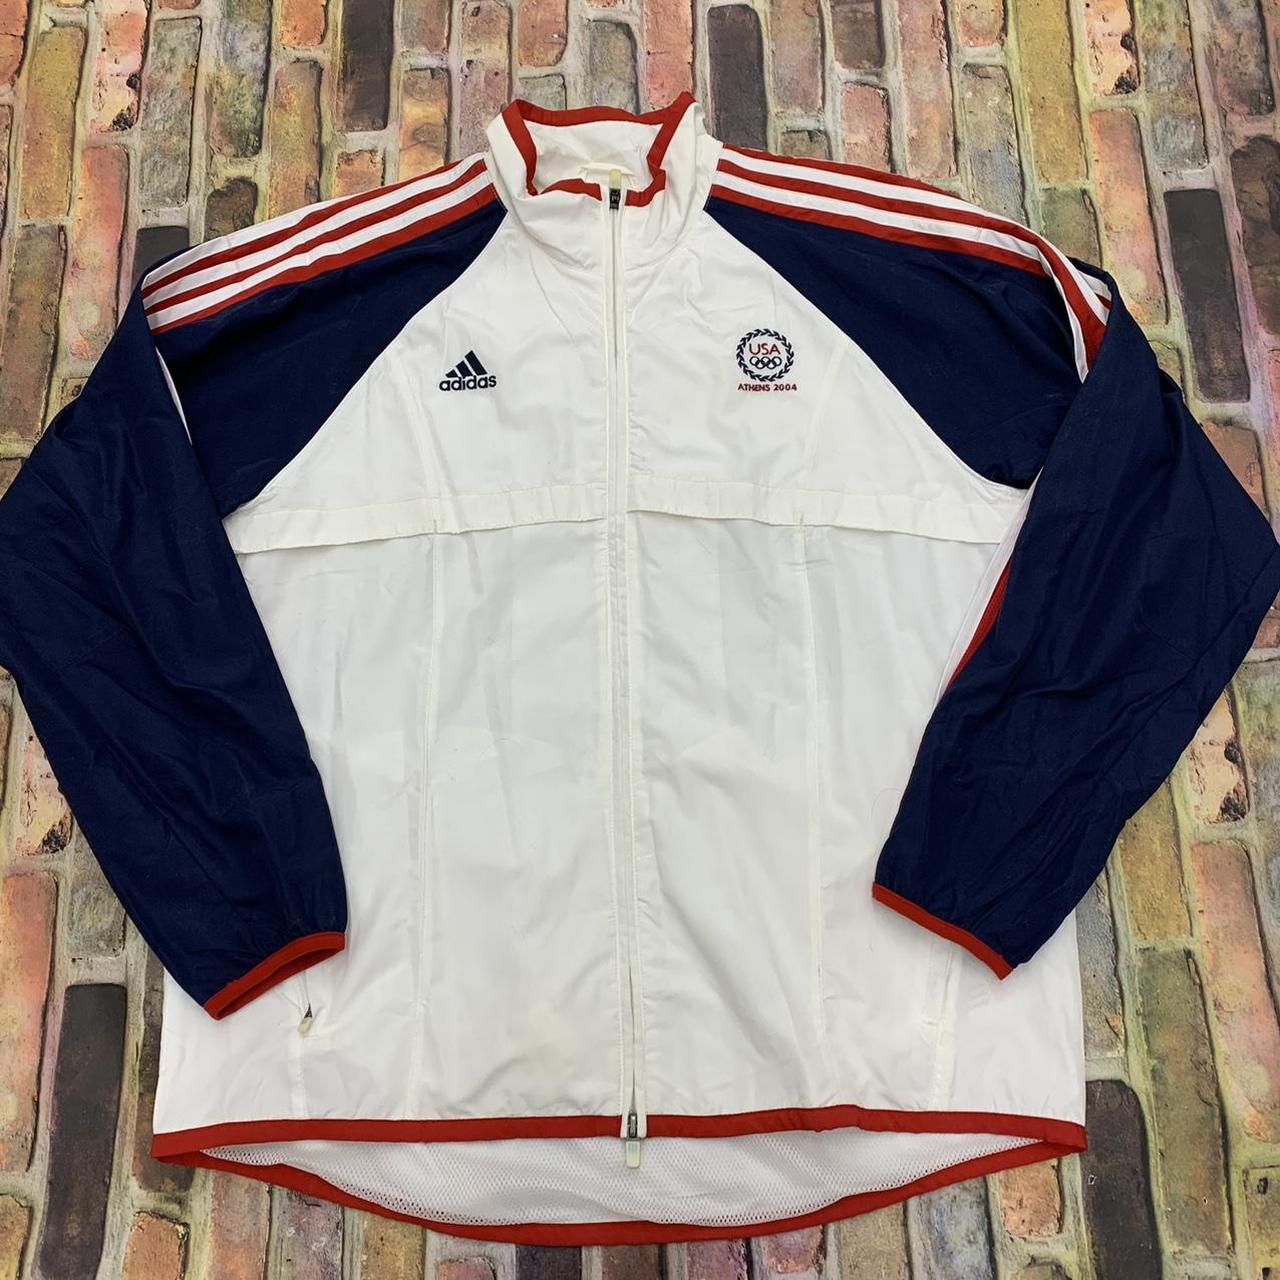 Vintage Adidas Team USA Athens Olympics jacket... - Depop